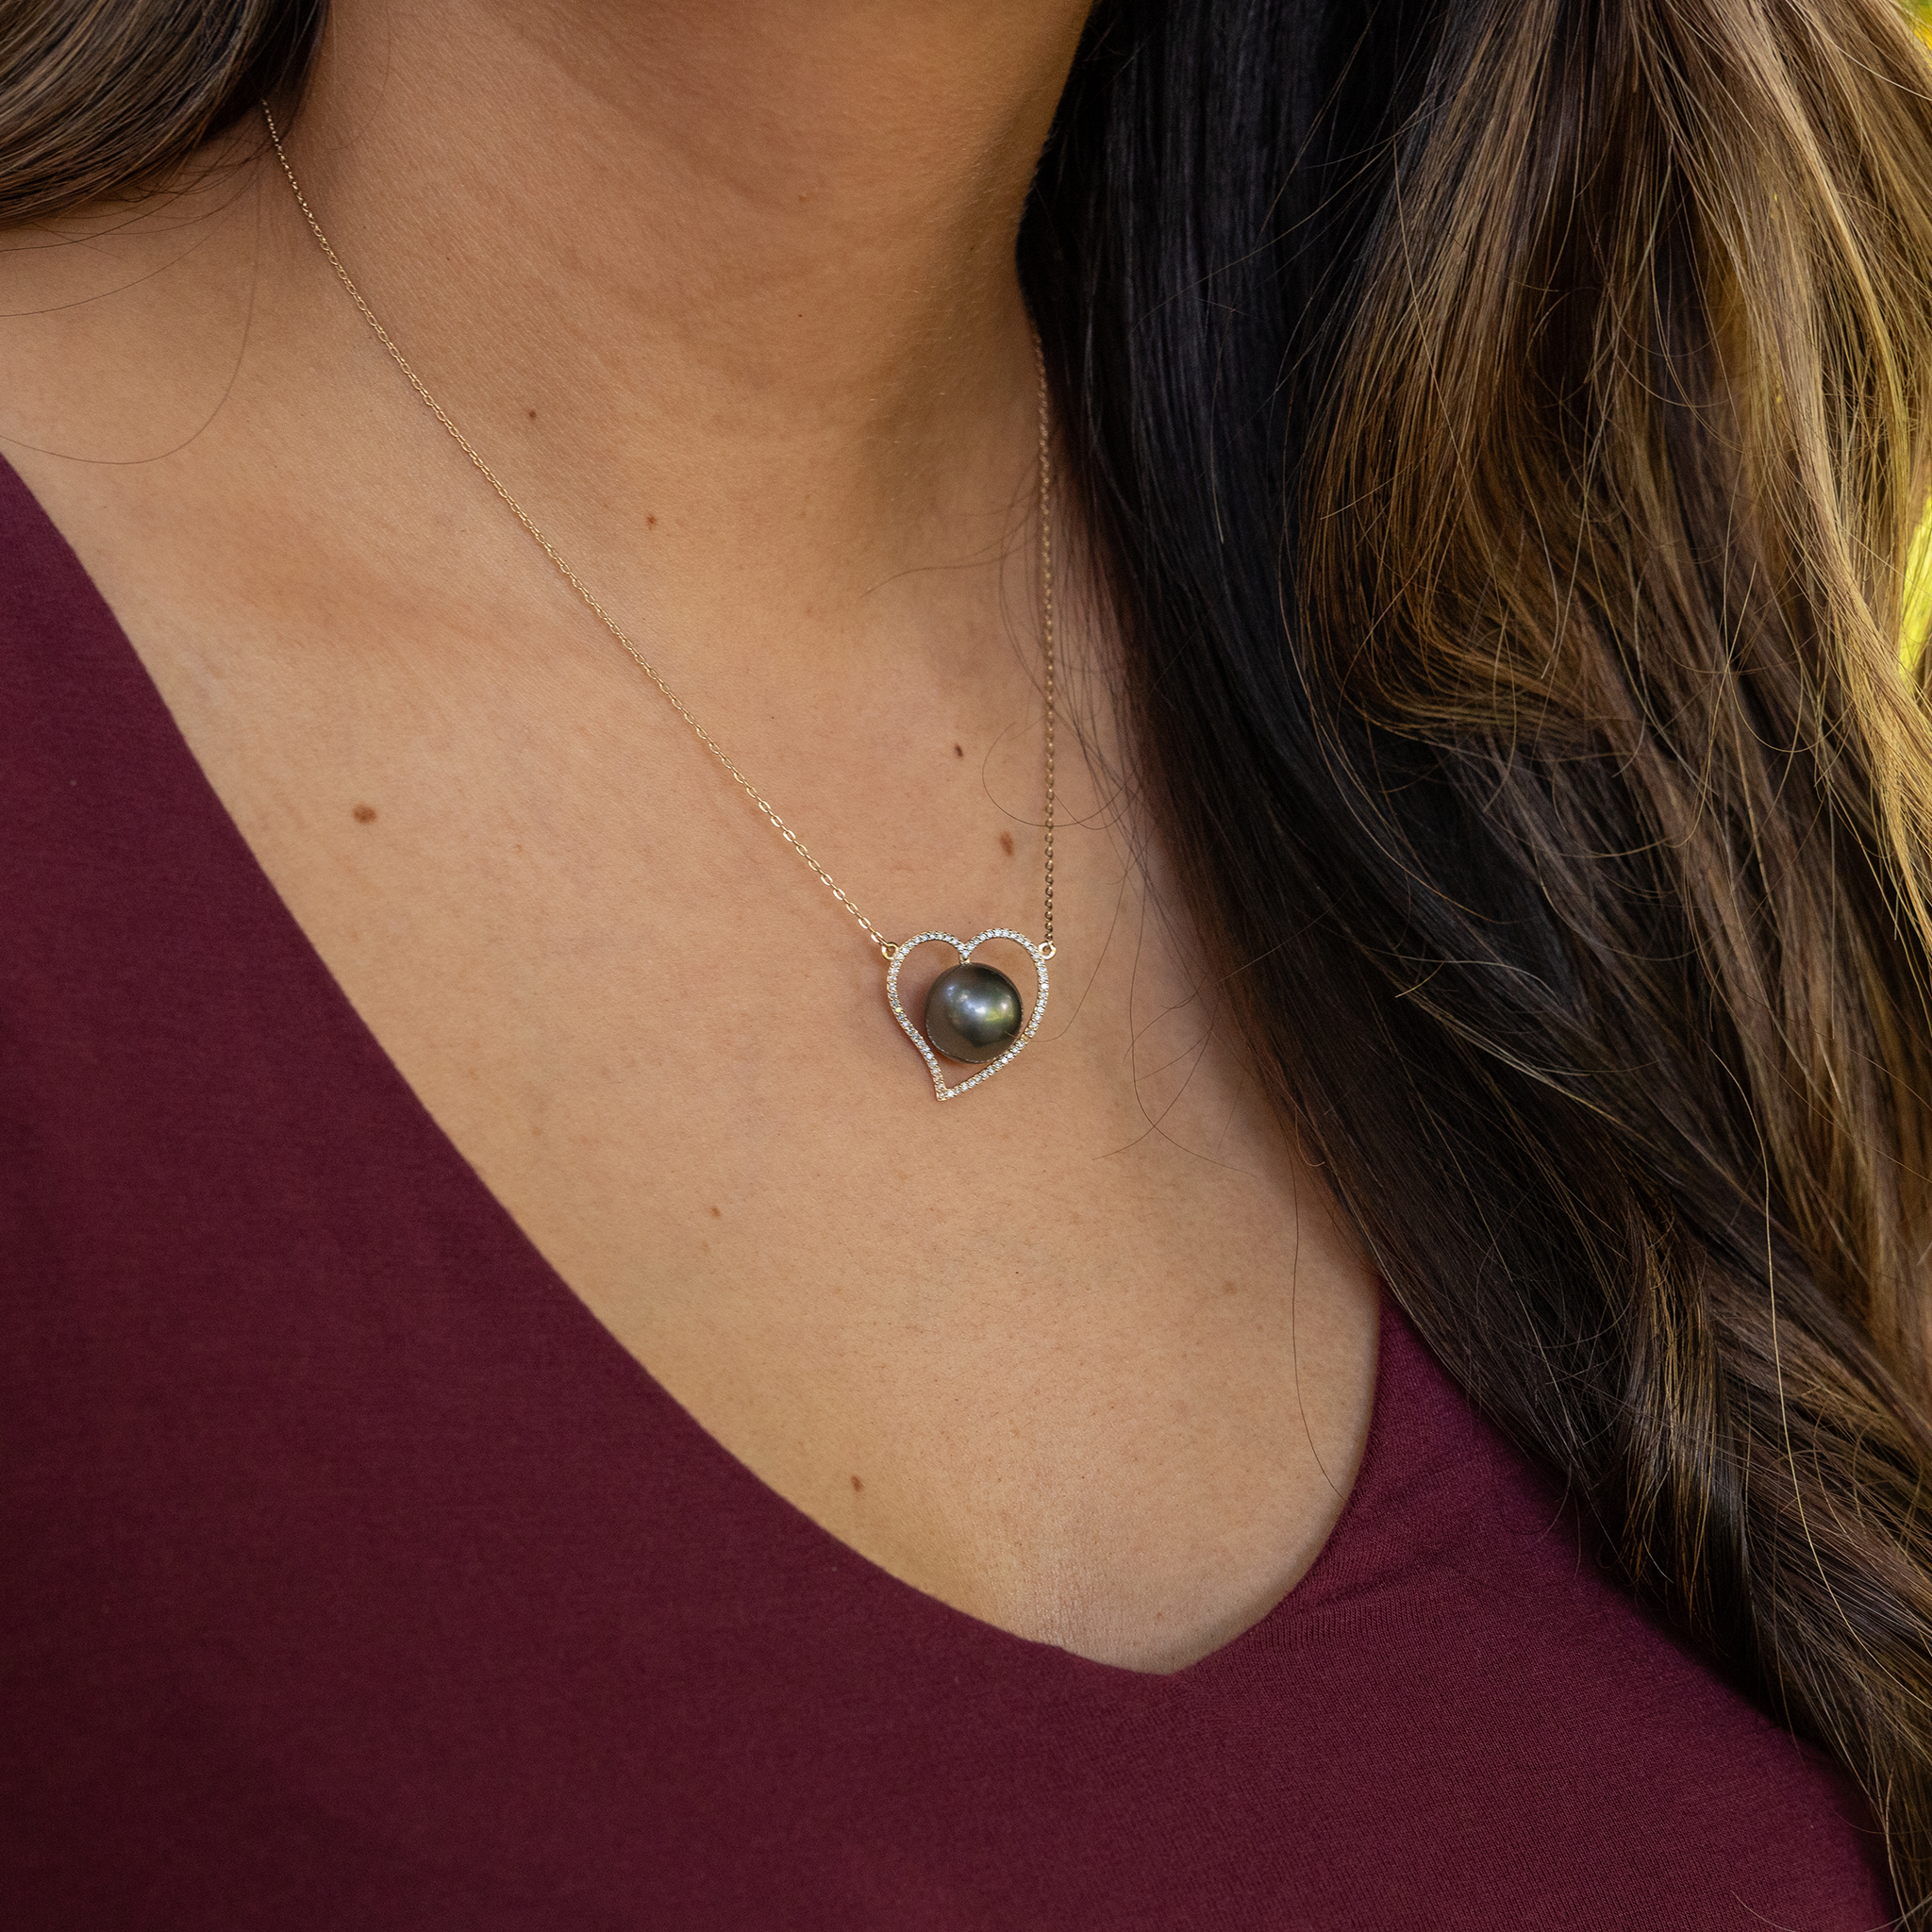 16 "Collier de coeur de perle noir tahitien en or - 12-13 mm